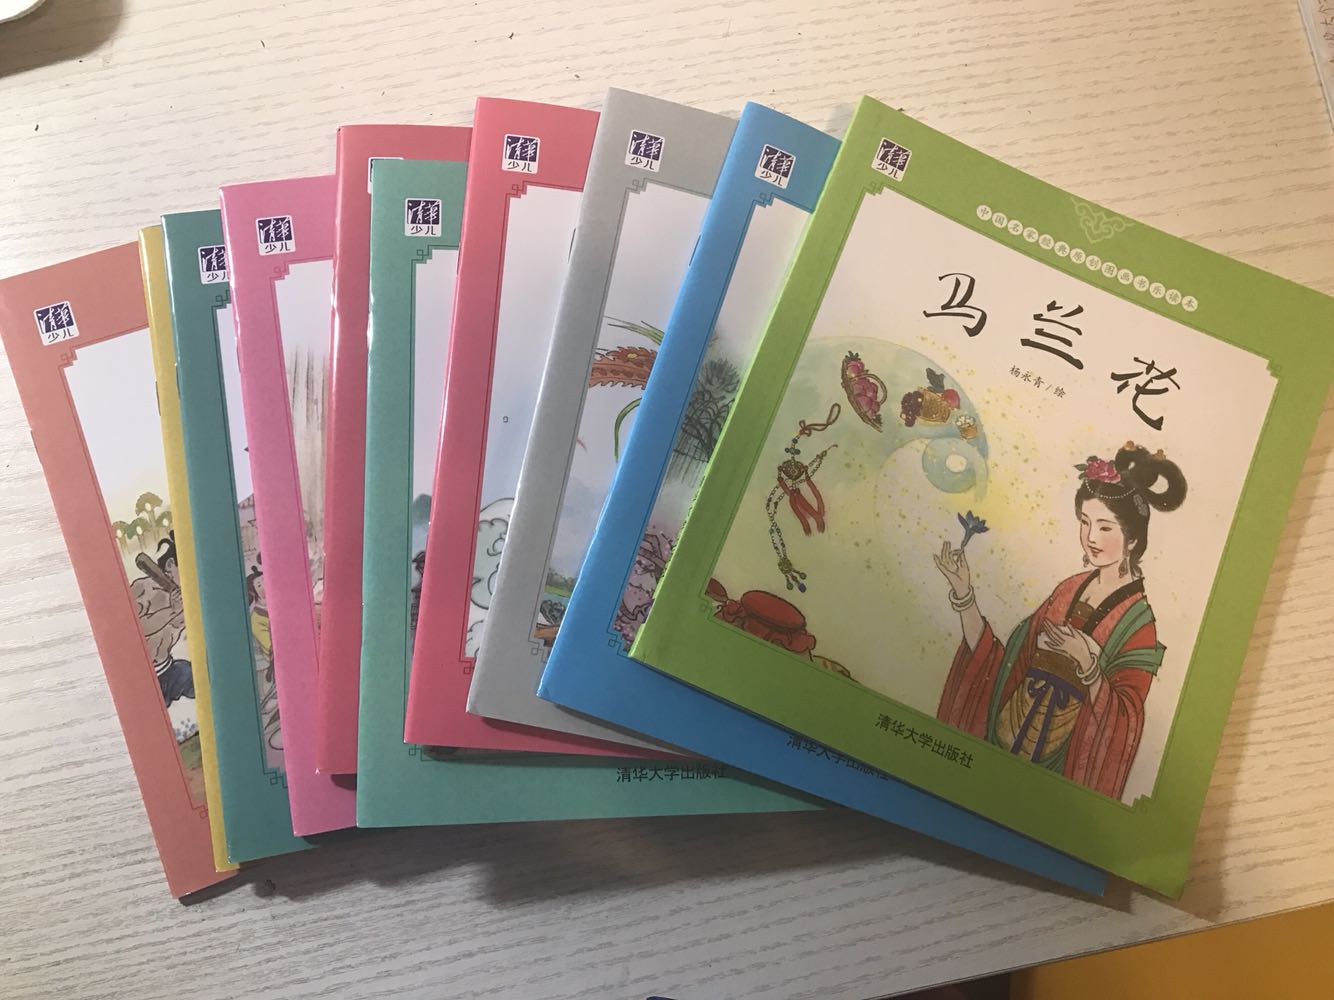 很中国风，非常喜欢，现在的童书太少有这么中国的画风了！